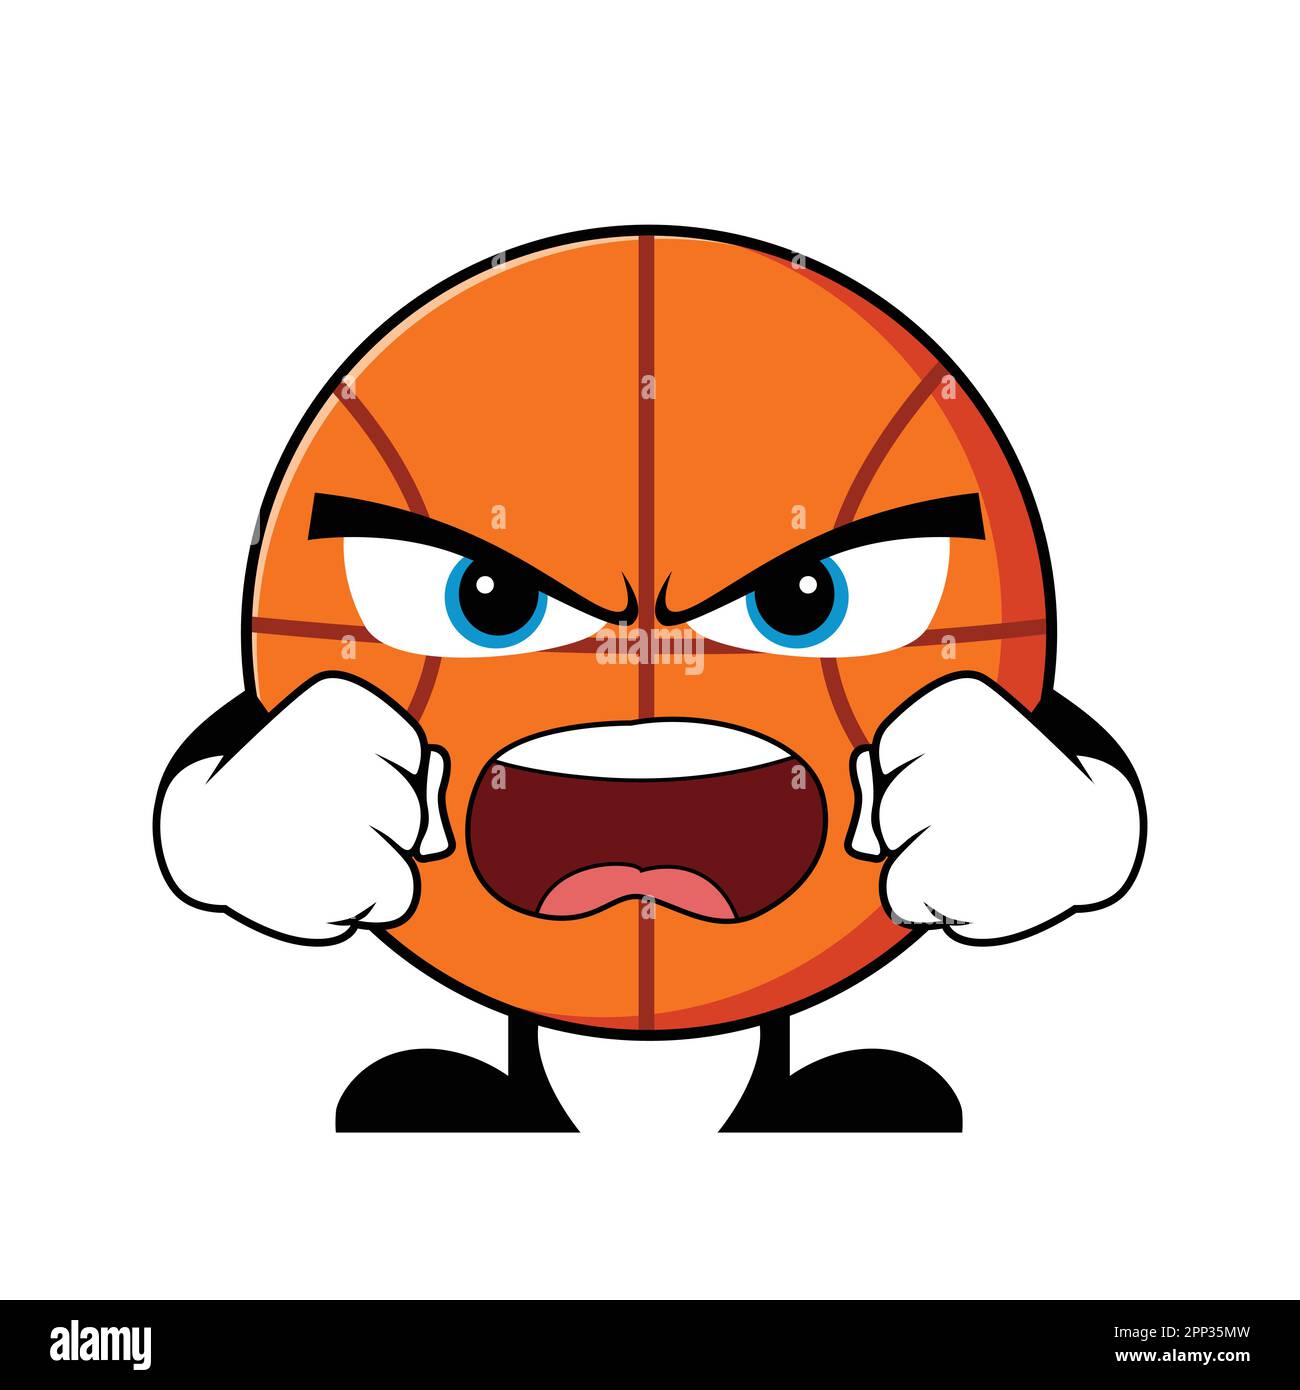 Angry Basketball Cartoon Character. Mascot Character vector. Stock Vector